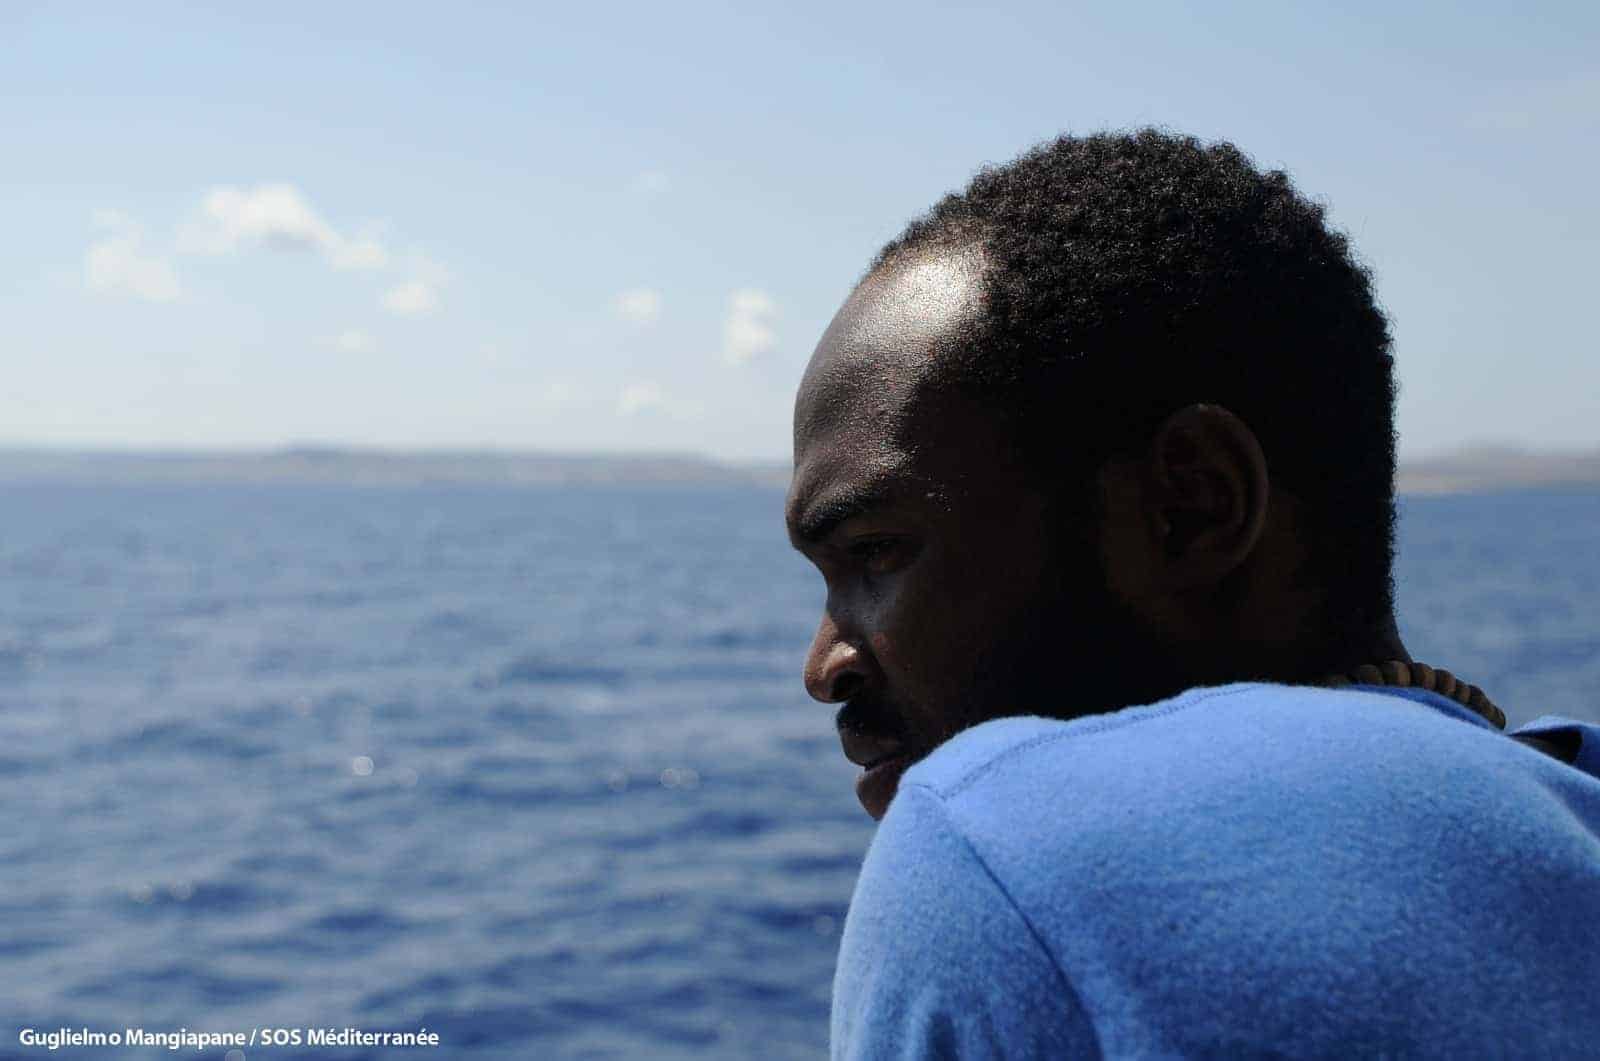 SOS MEDITERRANEE sollevata per l’assegnazione di un luogo sicuro, ma preoccupata per il futuro dell’azione umanitaria